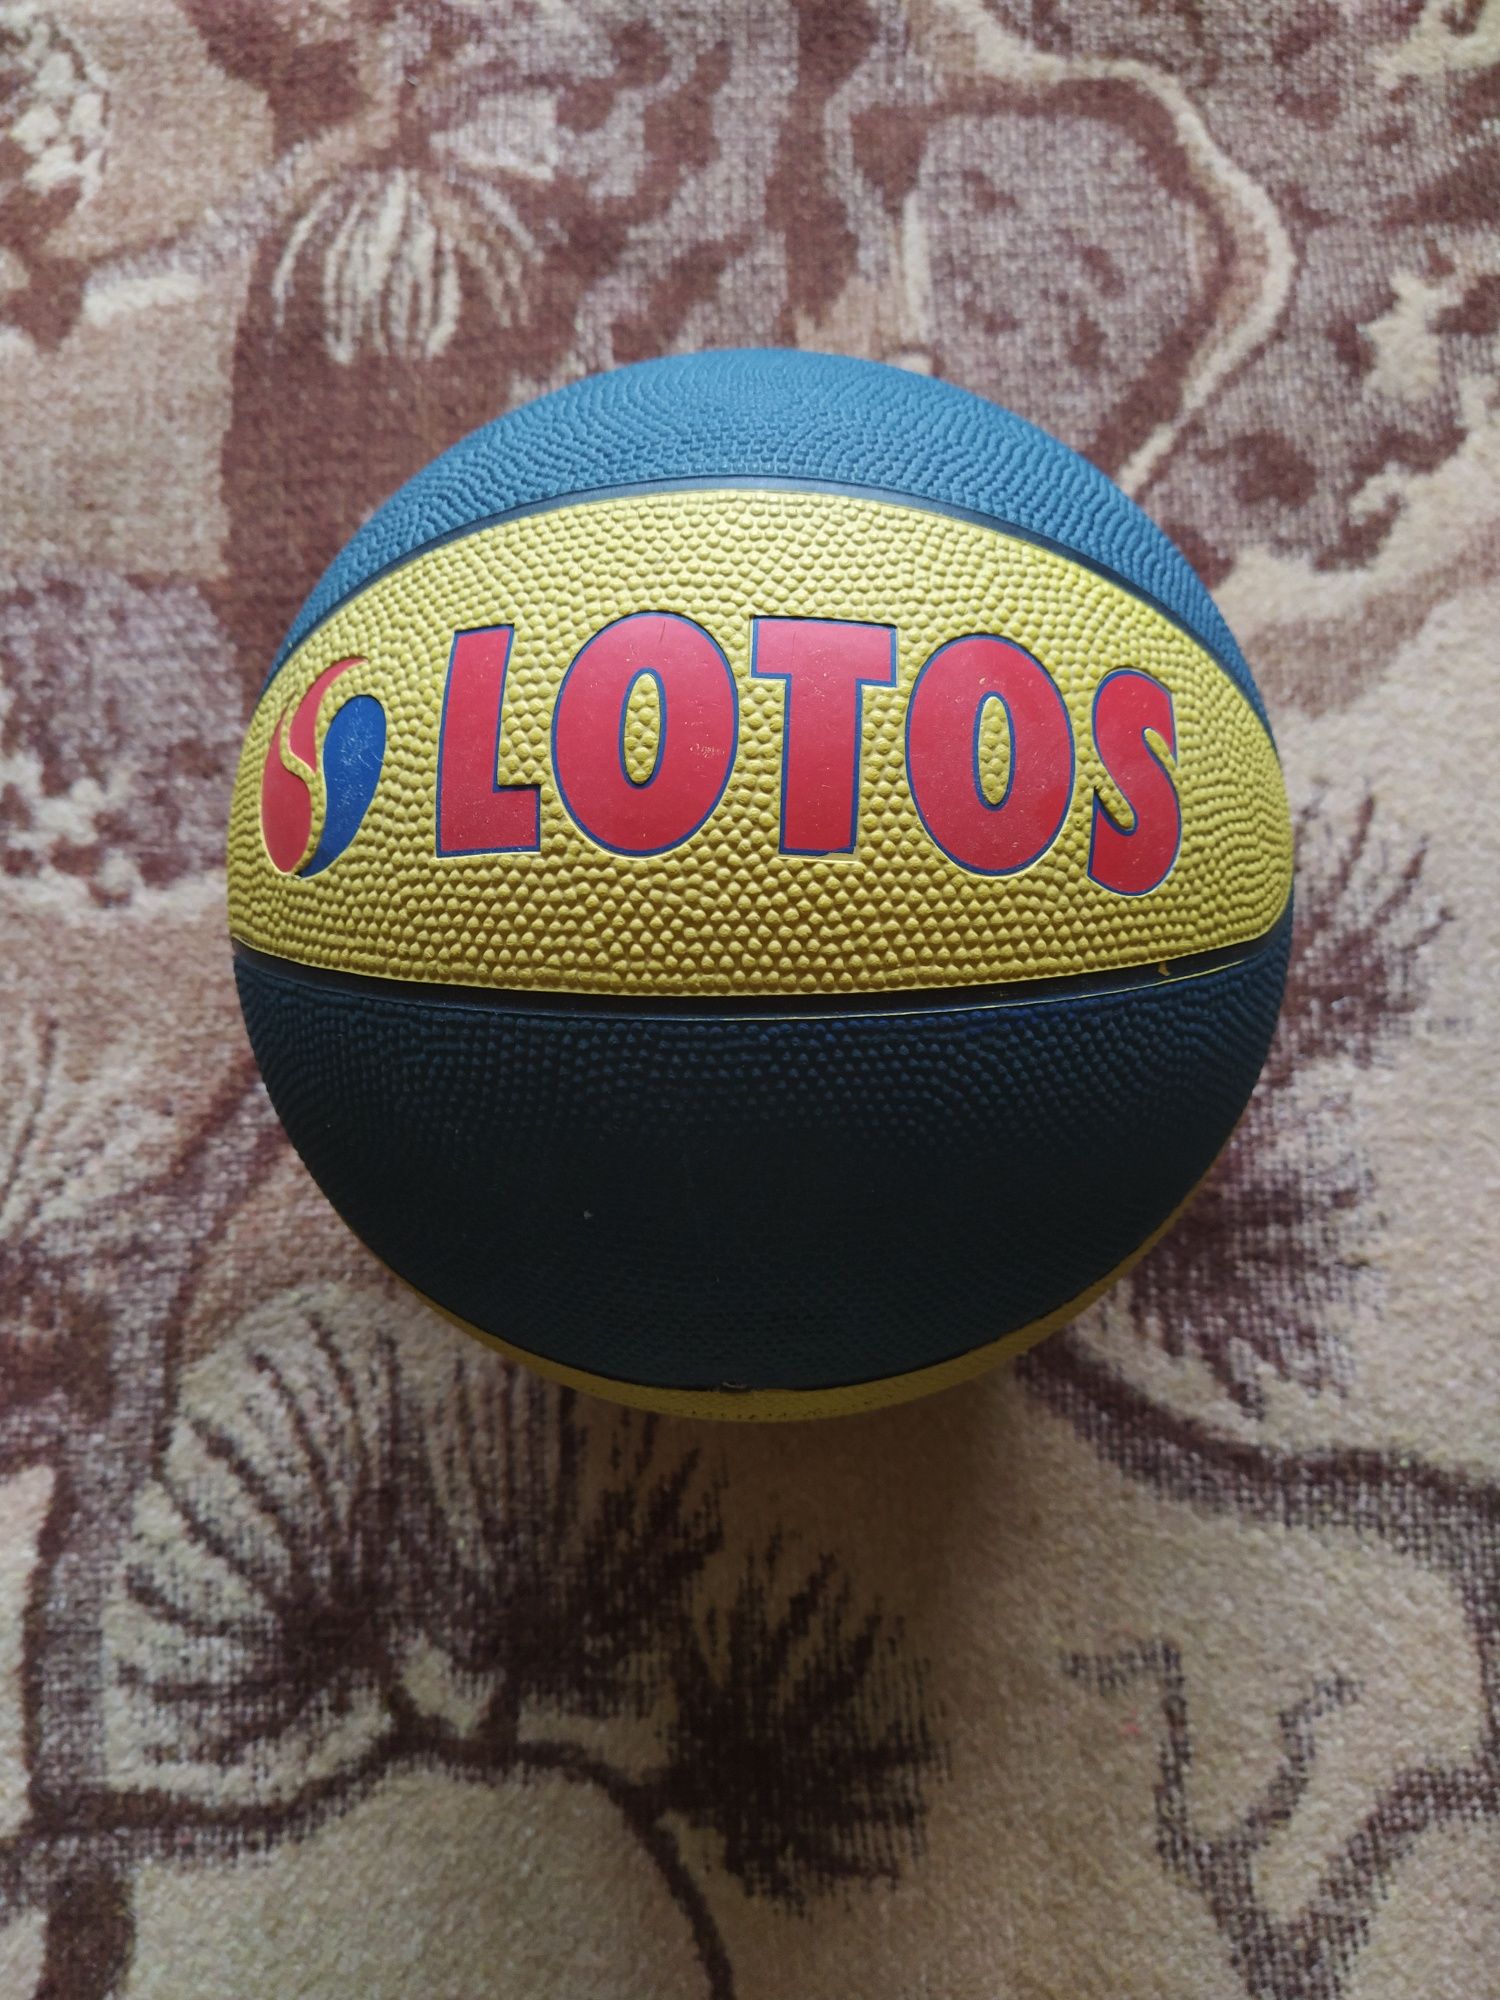 Piłka do koszykówki z logo LOTOSU Gdynia.